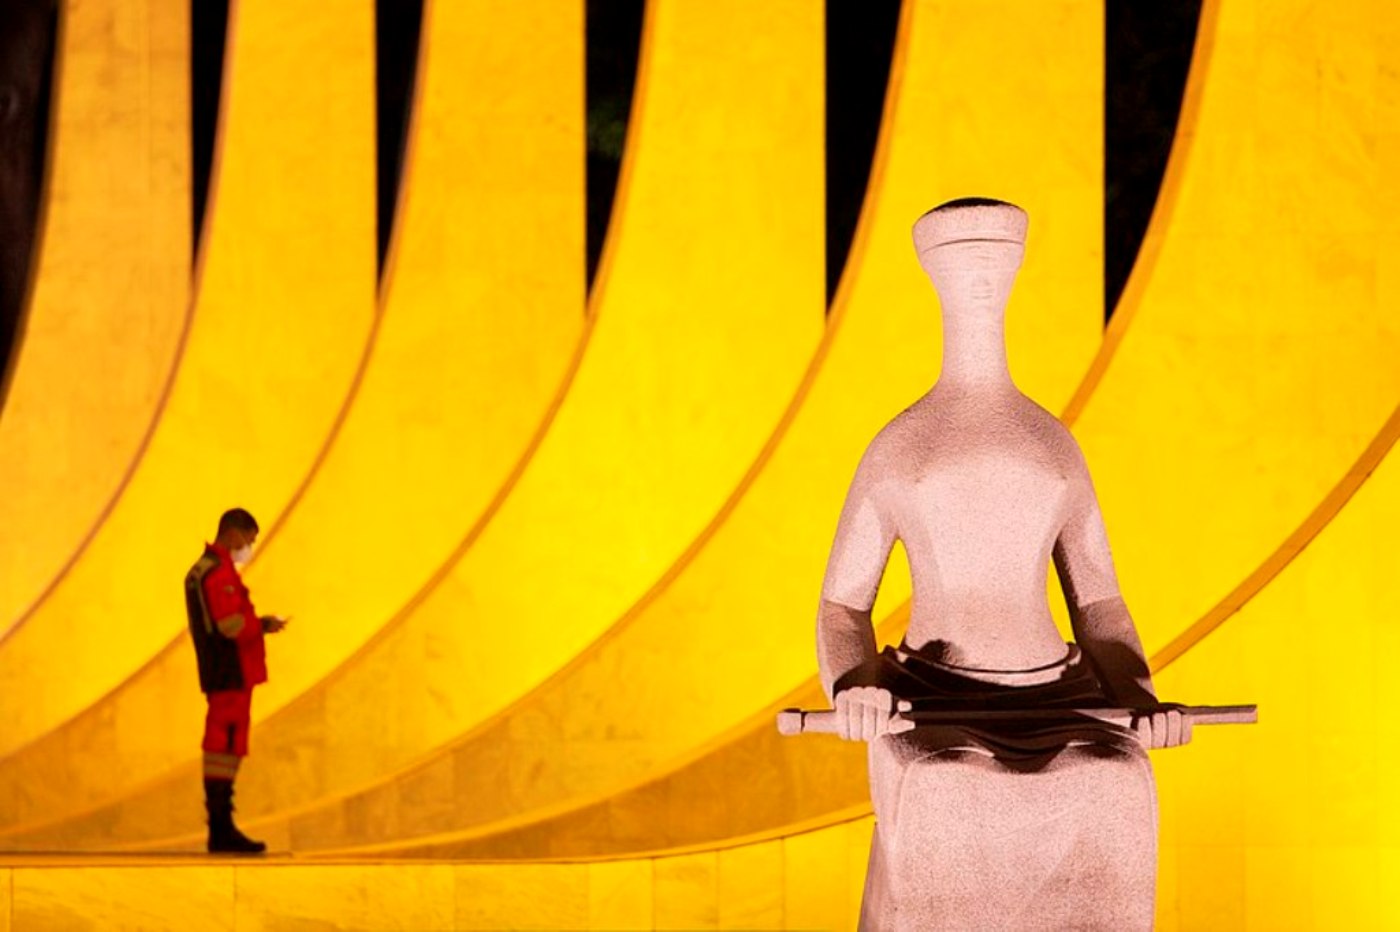 Estátua A Justiça e STF foto de monumento concurso de fotografia prêmio de fotografia Brasília